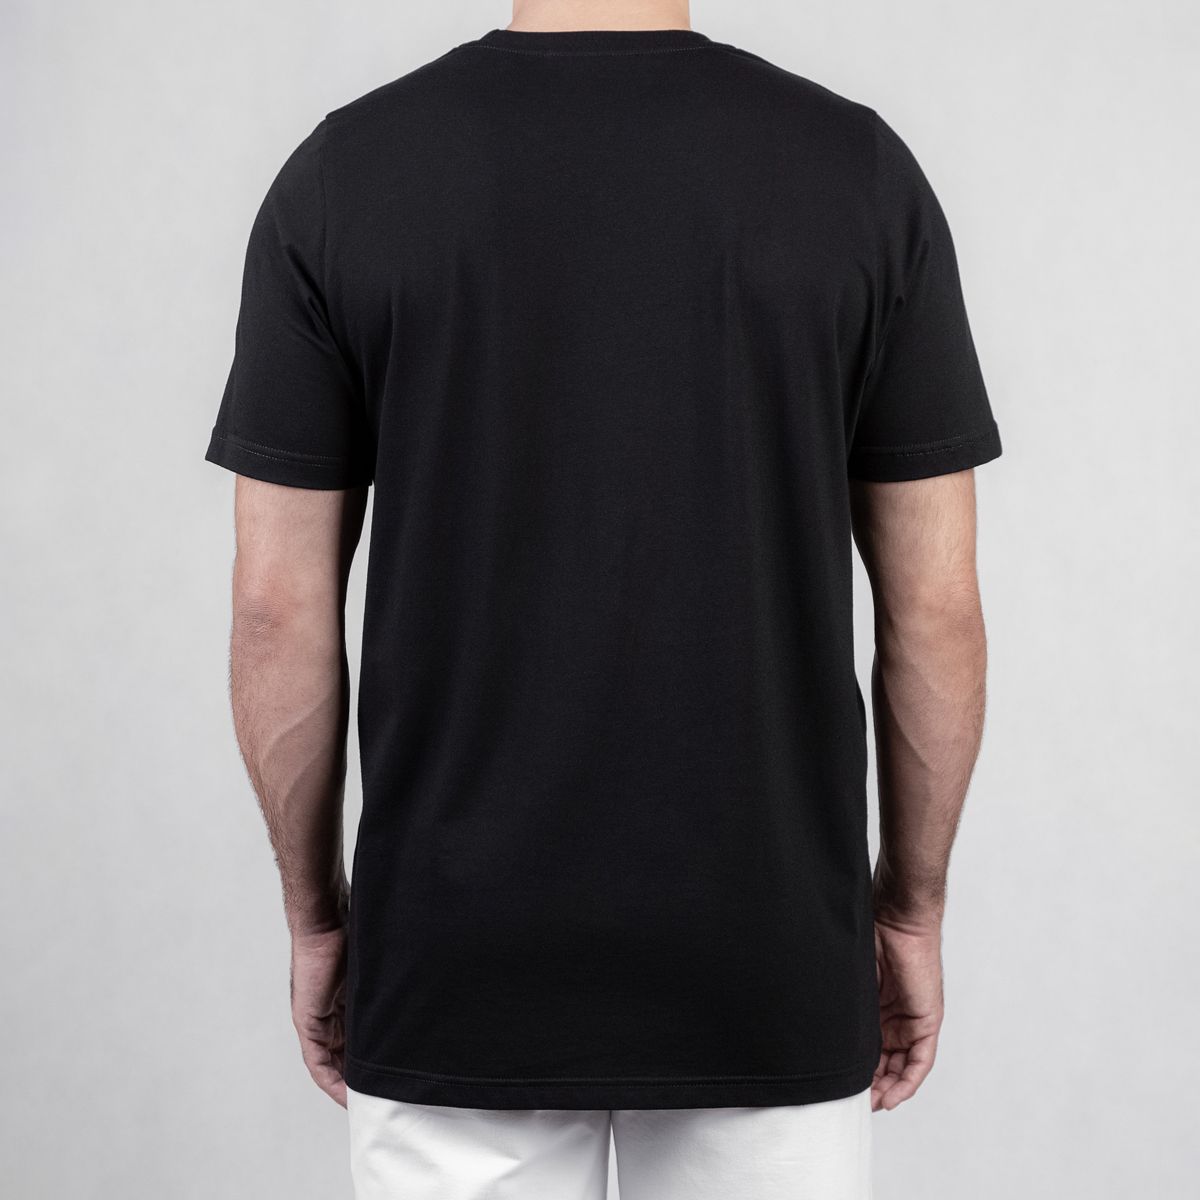 تی شرت ورزشی مردانه مل اند موژ مدل M07782-001 -  - 2